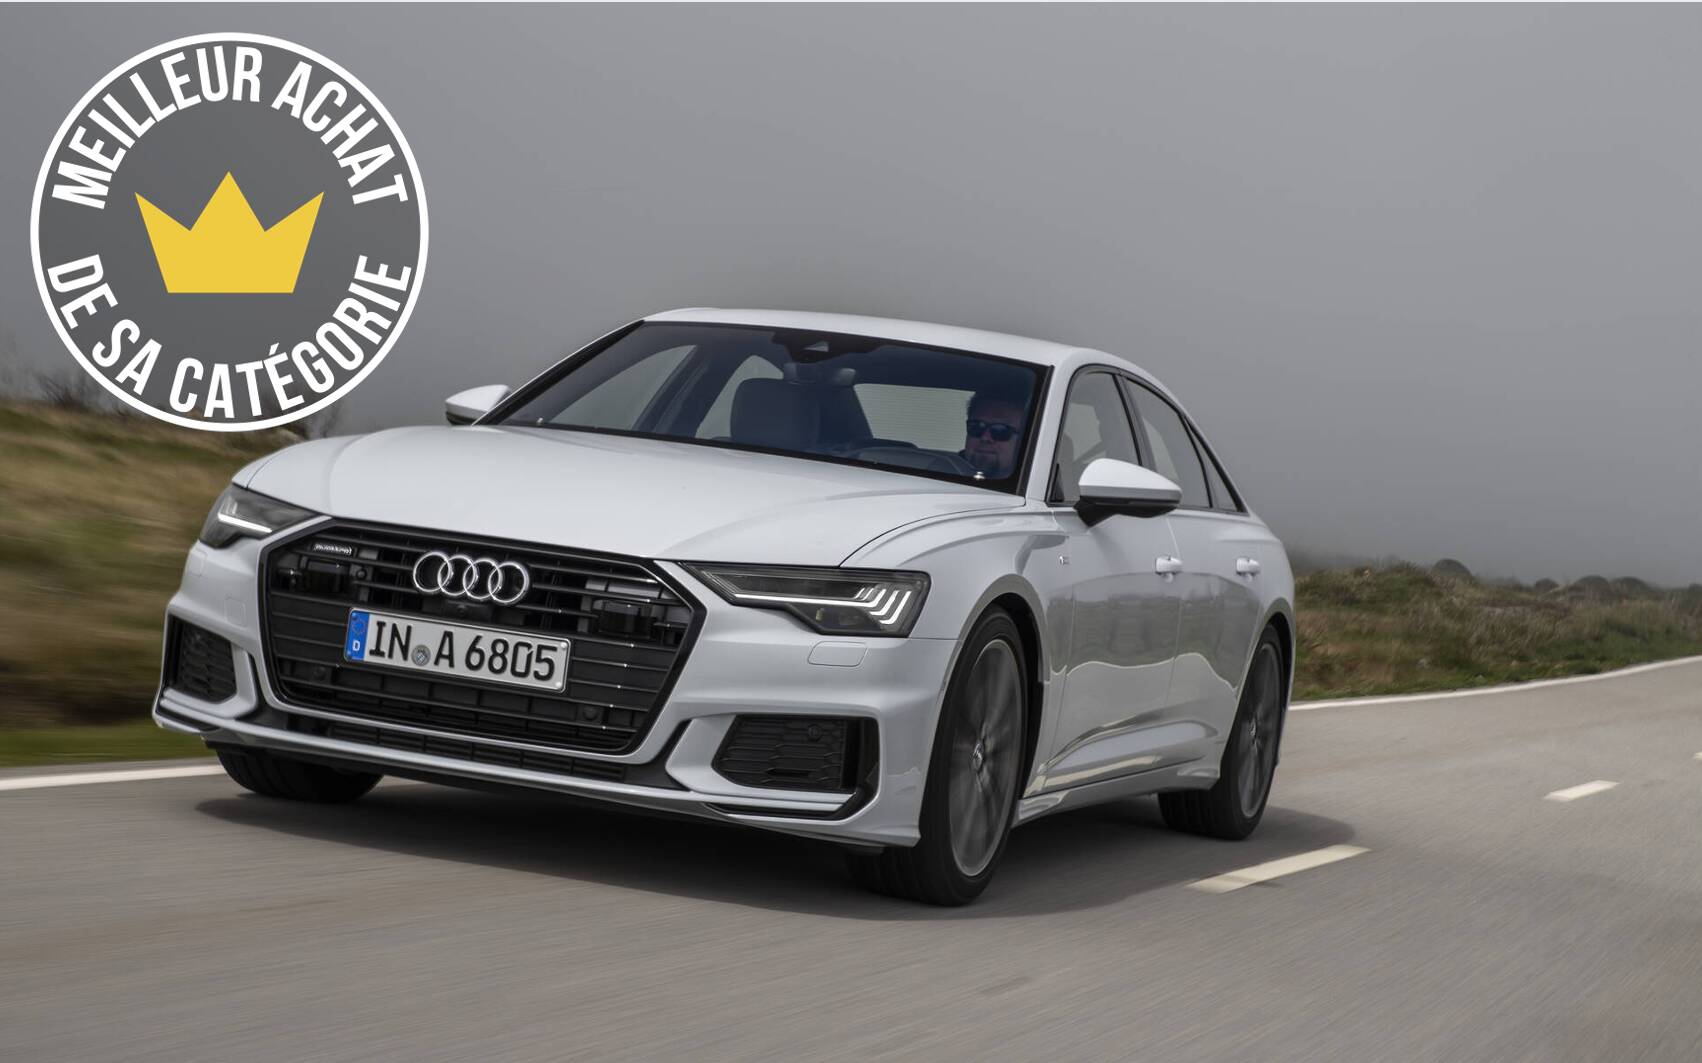 Meilleurs achats 2021 du Guide de l'auto : Audi A6 et A7 - Guide Auto